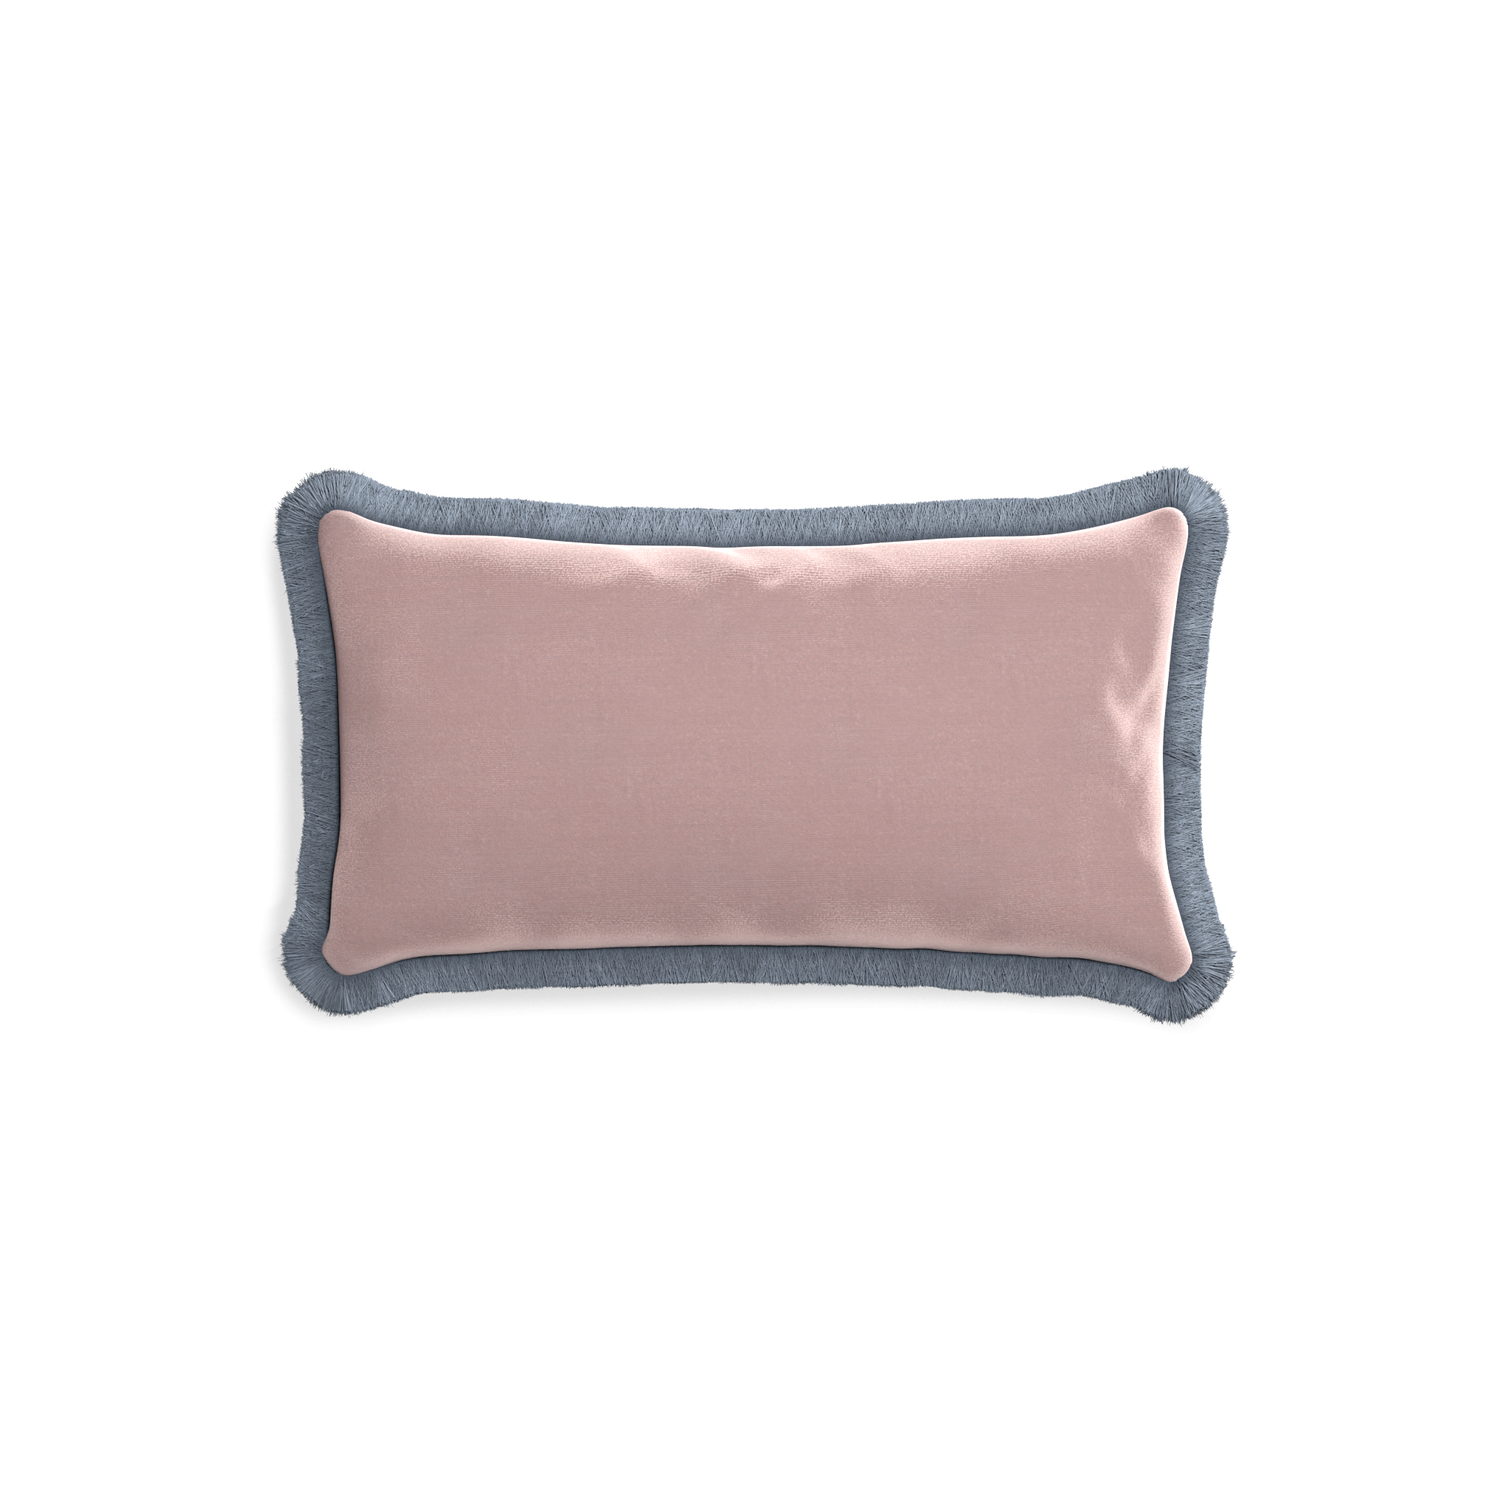 rectangle mauve velvet pillow with sky blue fringe